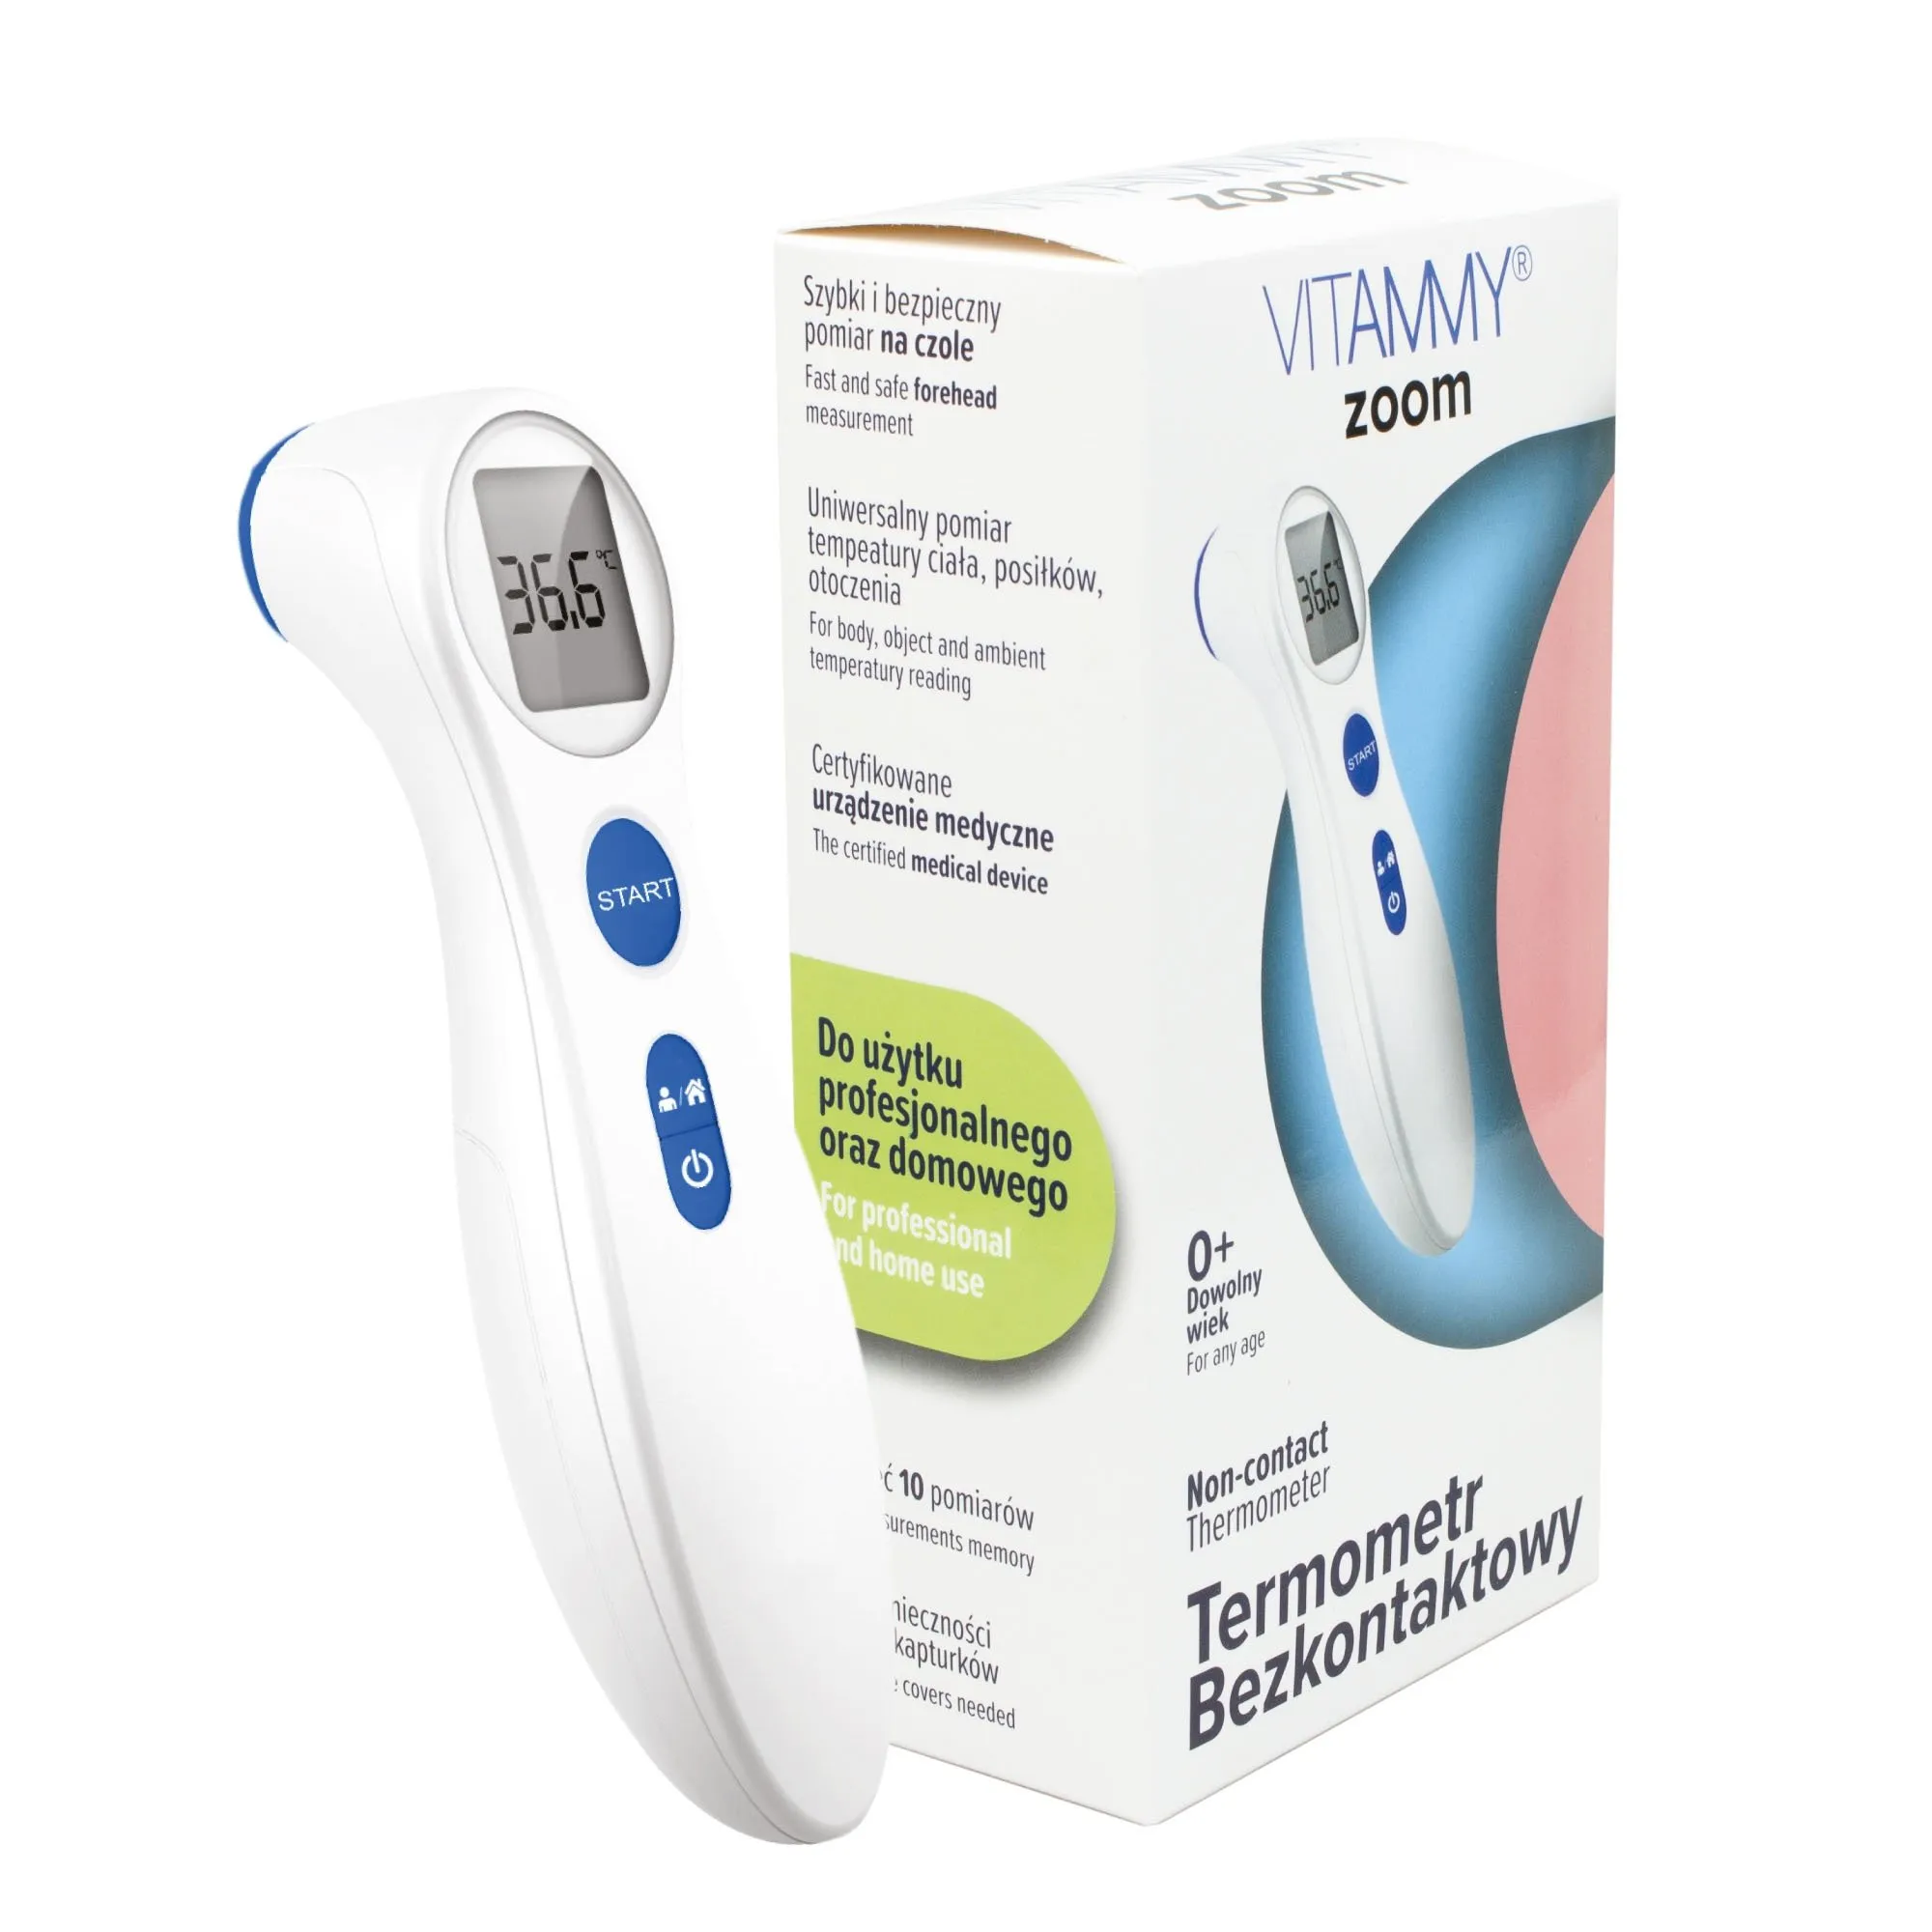 Vitammy Zoom, elektroniczny termometr bezdotykowy 